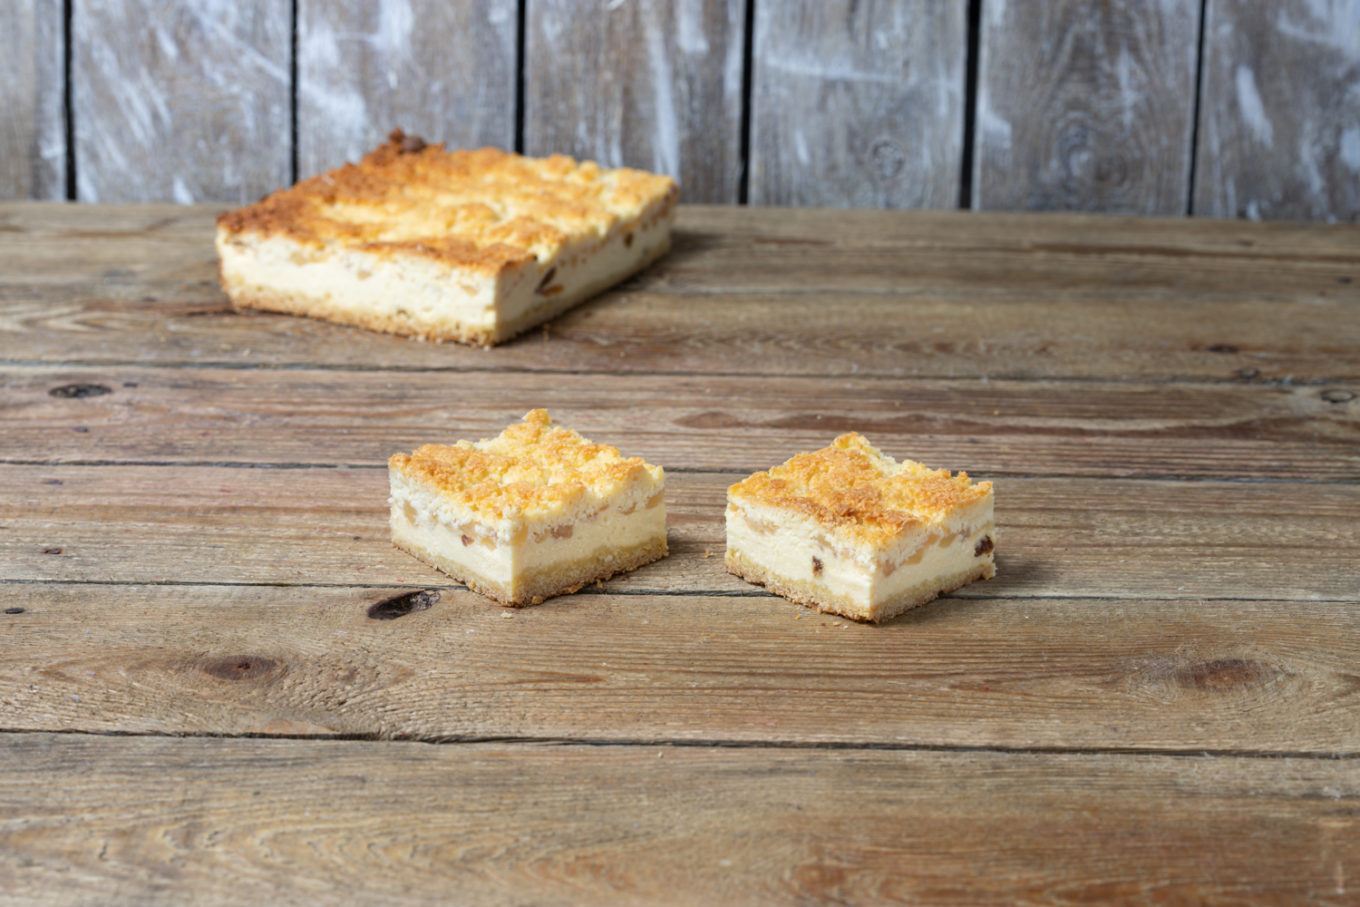 cheesecake con mele e cocco Pasticceria Jacek Placek è sinonimo del gusto delle torte fatte in casa a base di prodotti naturali.